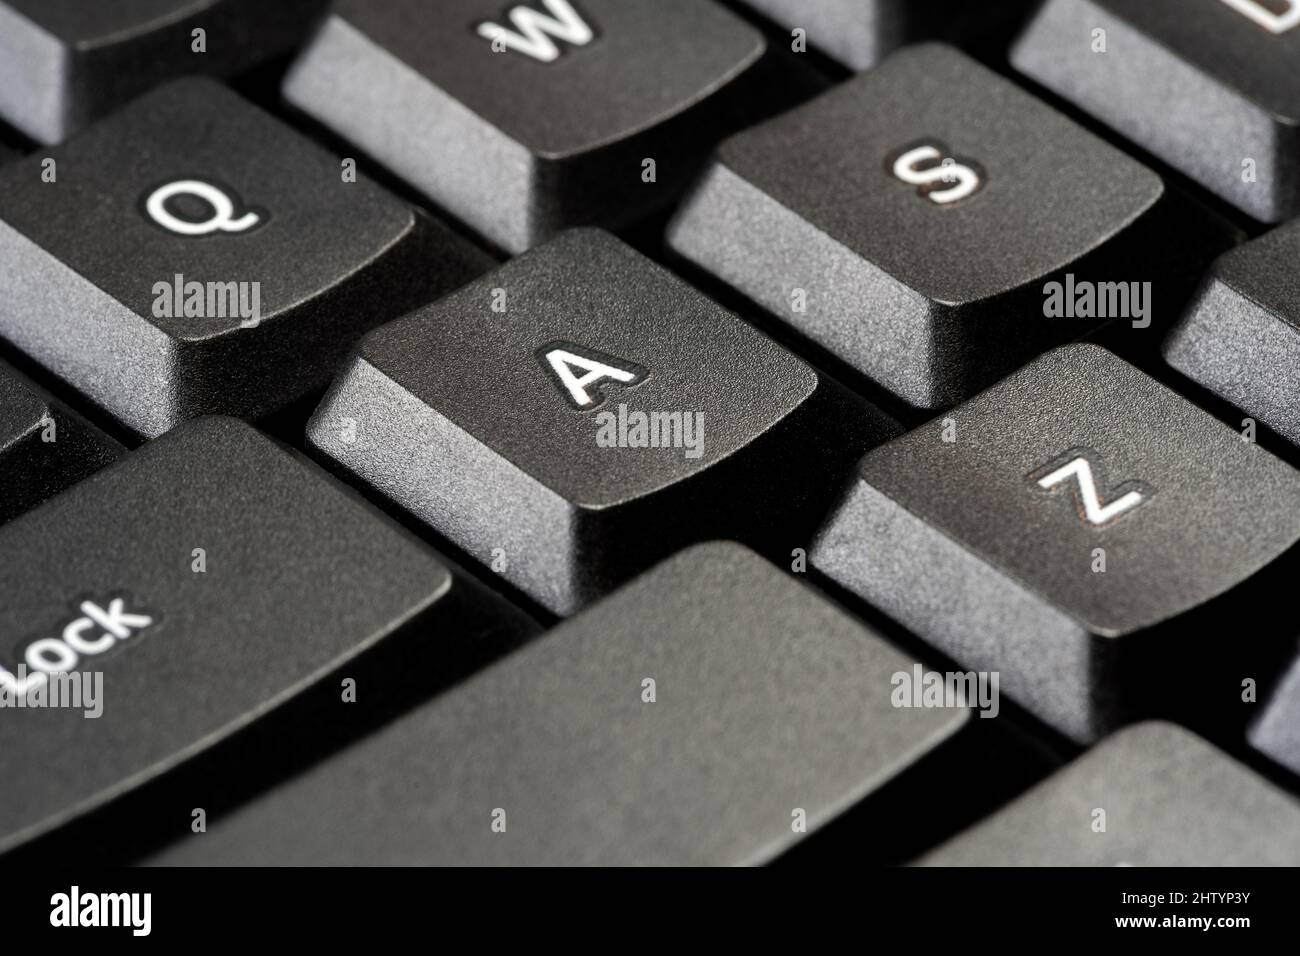 Ein einzelner Buchstabe Eine Taste auf einer einfachen schwarzen Office-Desktop-PC-Computer-Tastatur, Objektdetails, Makro, extreme Nahaufnahme, niemand, Keine Personen. Technologie, wri Stockfoto